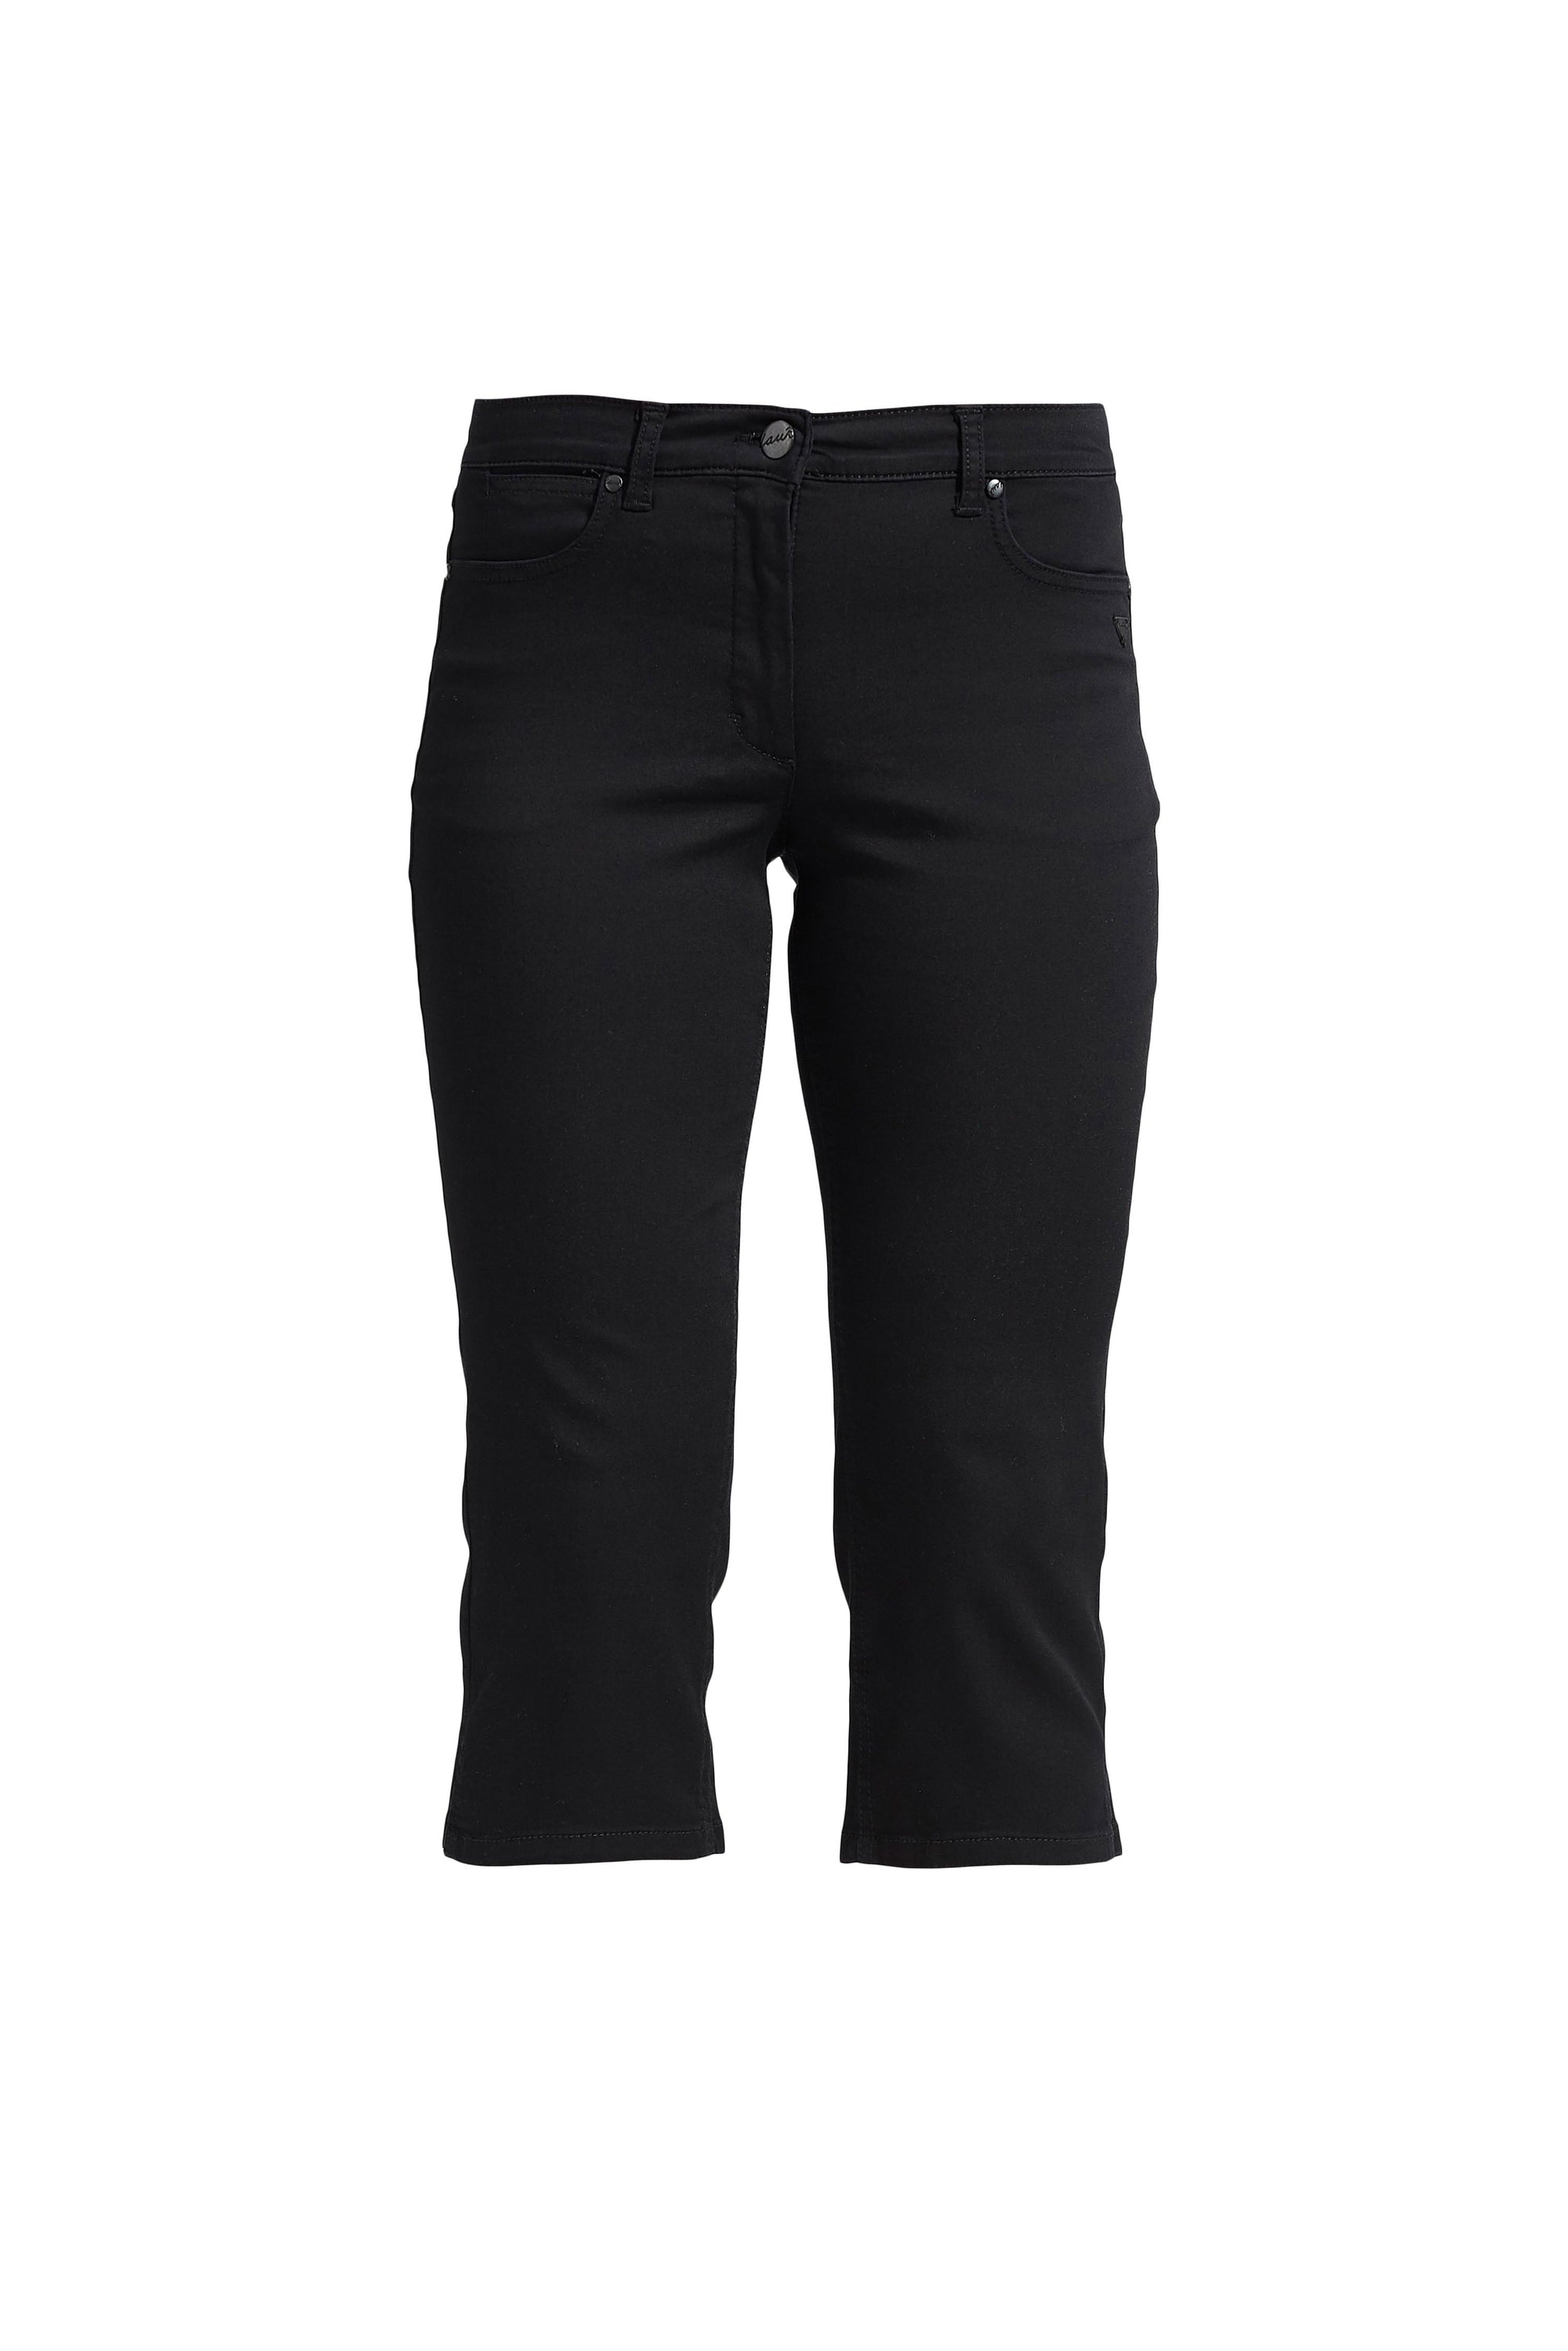 LAURIE Charlotte Regular Capri Housut Trousers REGULAR 99100 Black